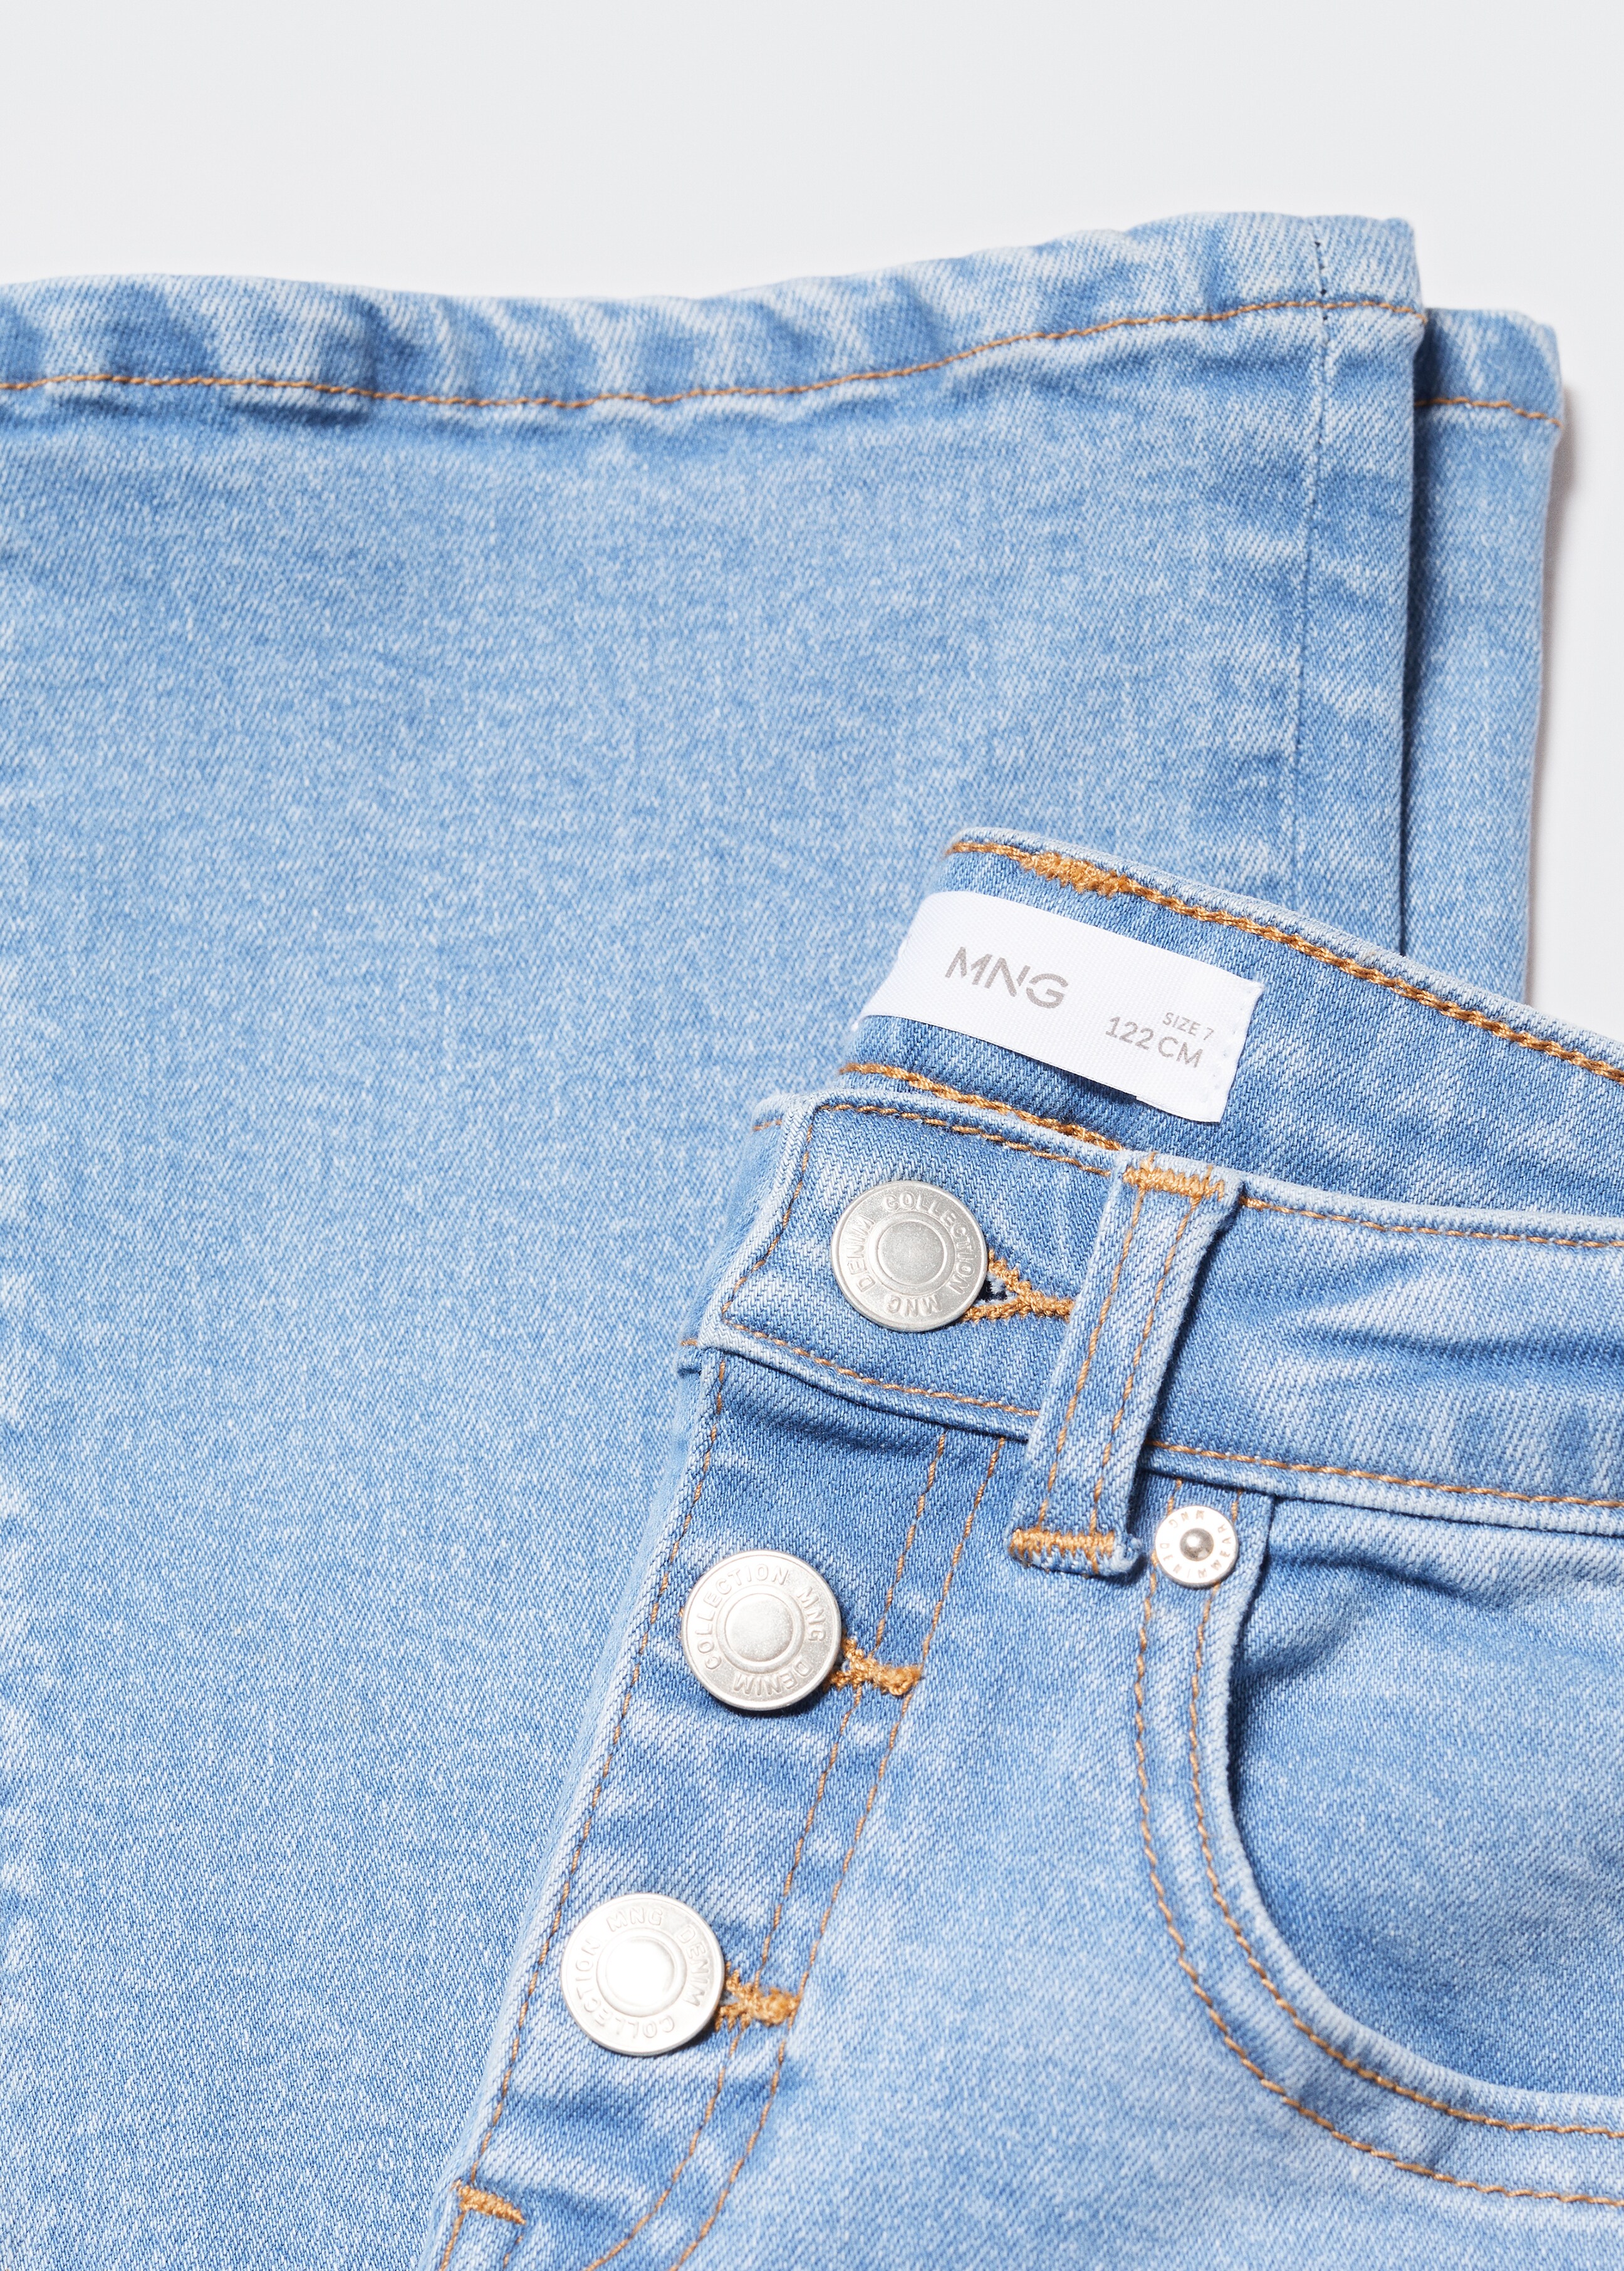 Jeans flare - Detalle del artículo 8